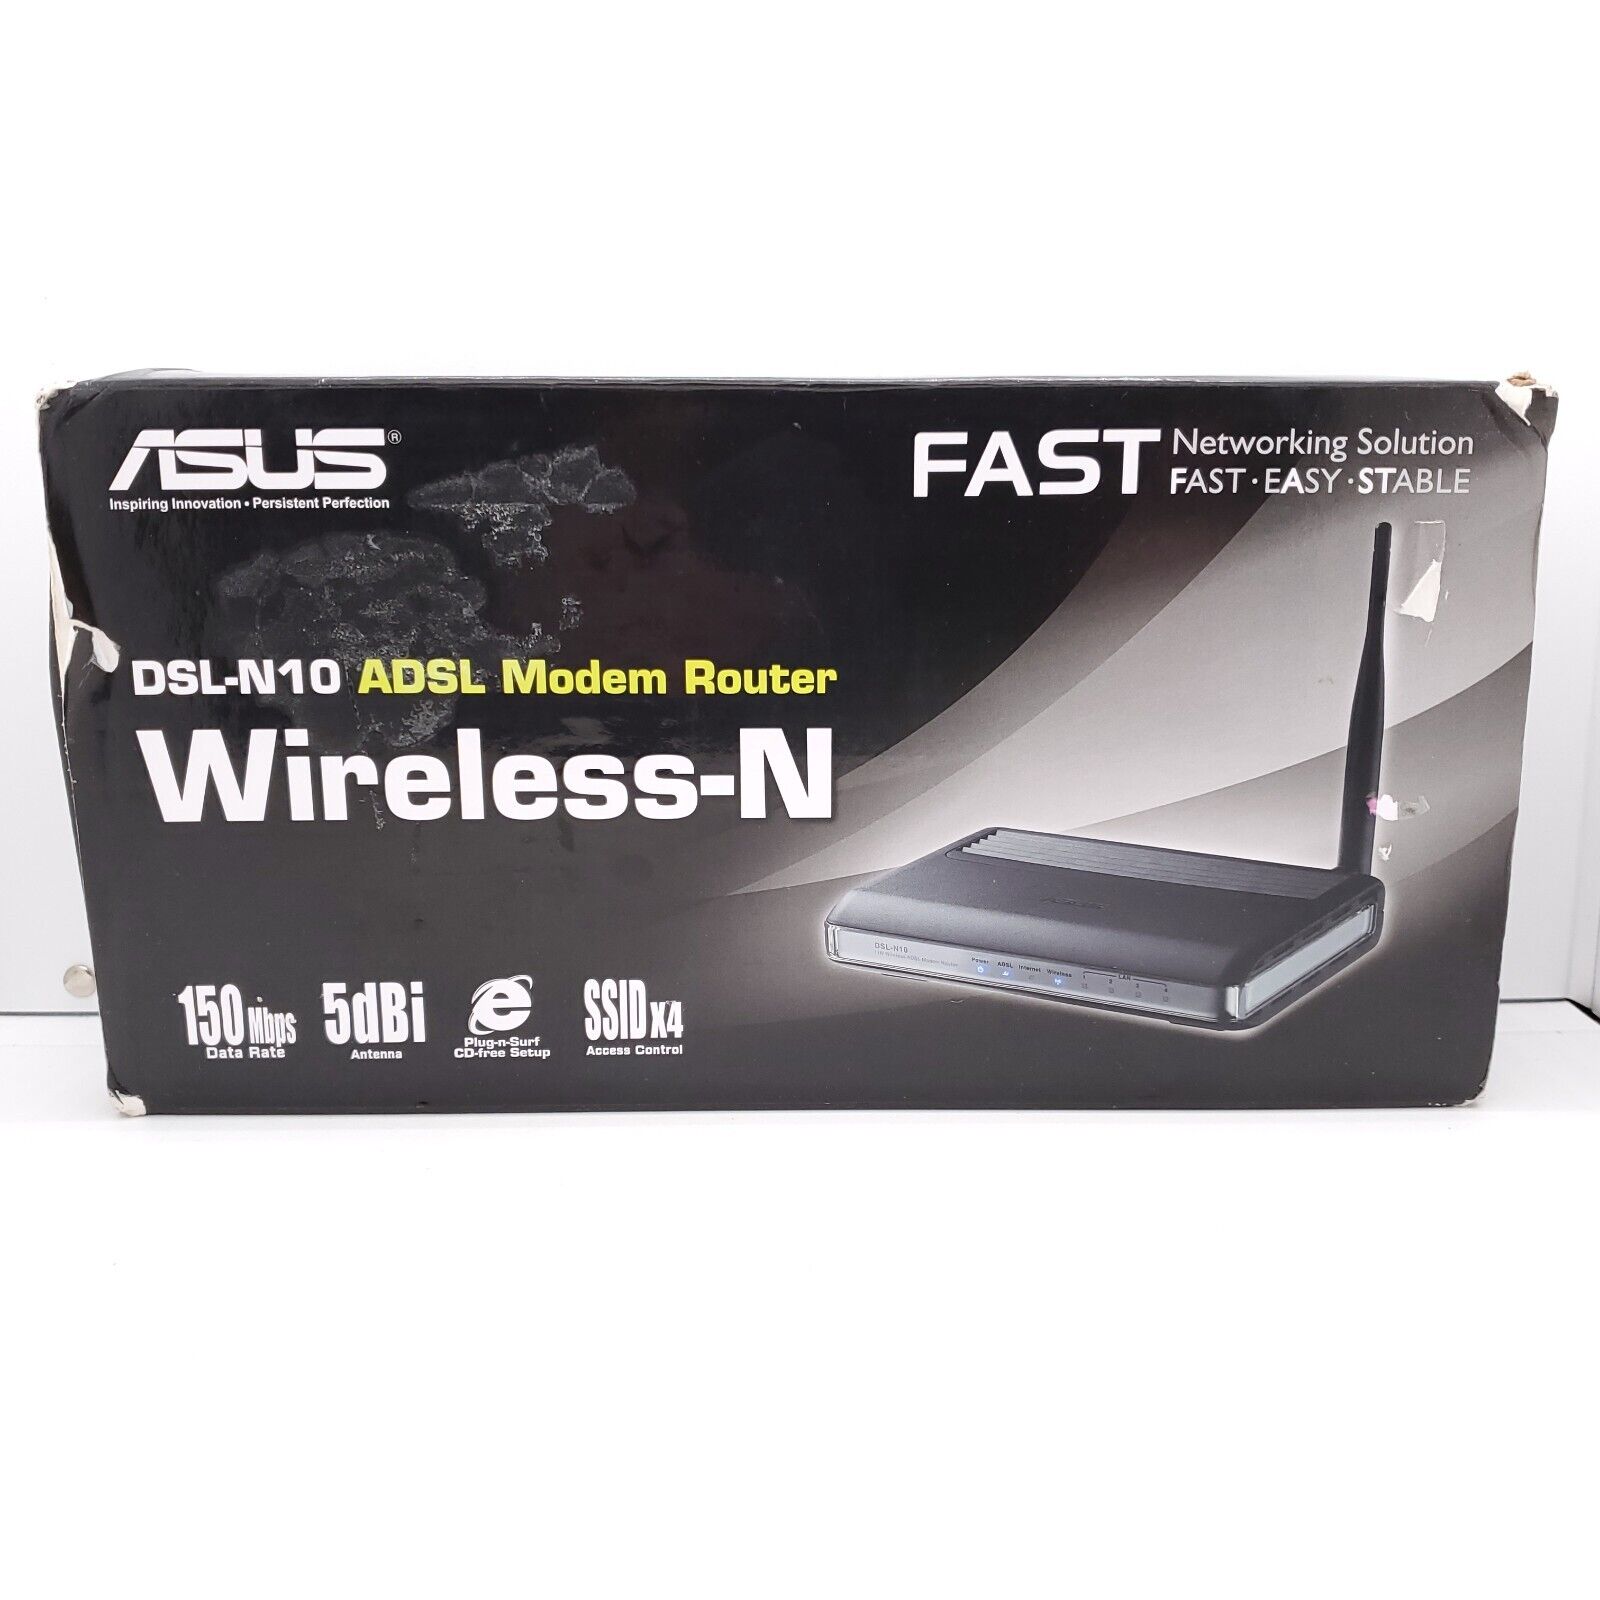 ASUS DSL-N10 ADSL Modem Router Wireless-N Wi-Fi WiFi Wireless Wireless-N